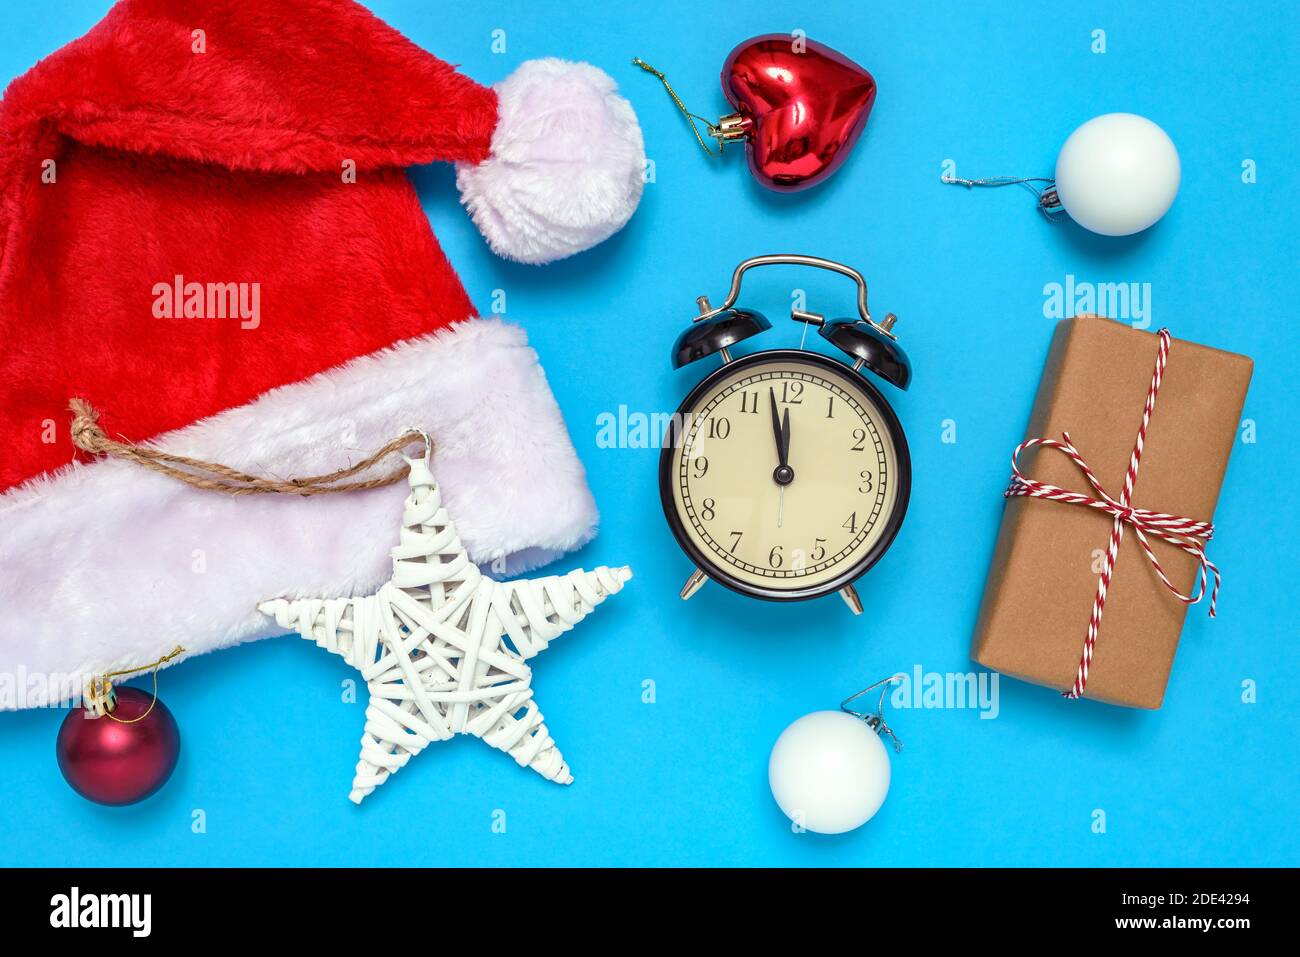 Weihnachtsmann Hut, Wecker, Geschenkbox und dekorative Weihnachtsschmuck auf blauem Hintergrund. Das Konzept der Feier des neuen Jahres und Weihnachten. Stockfoto